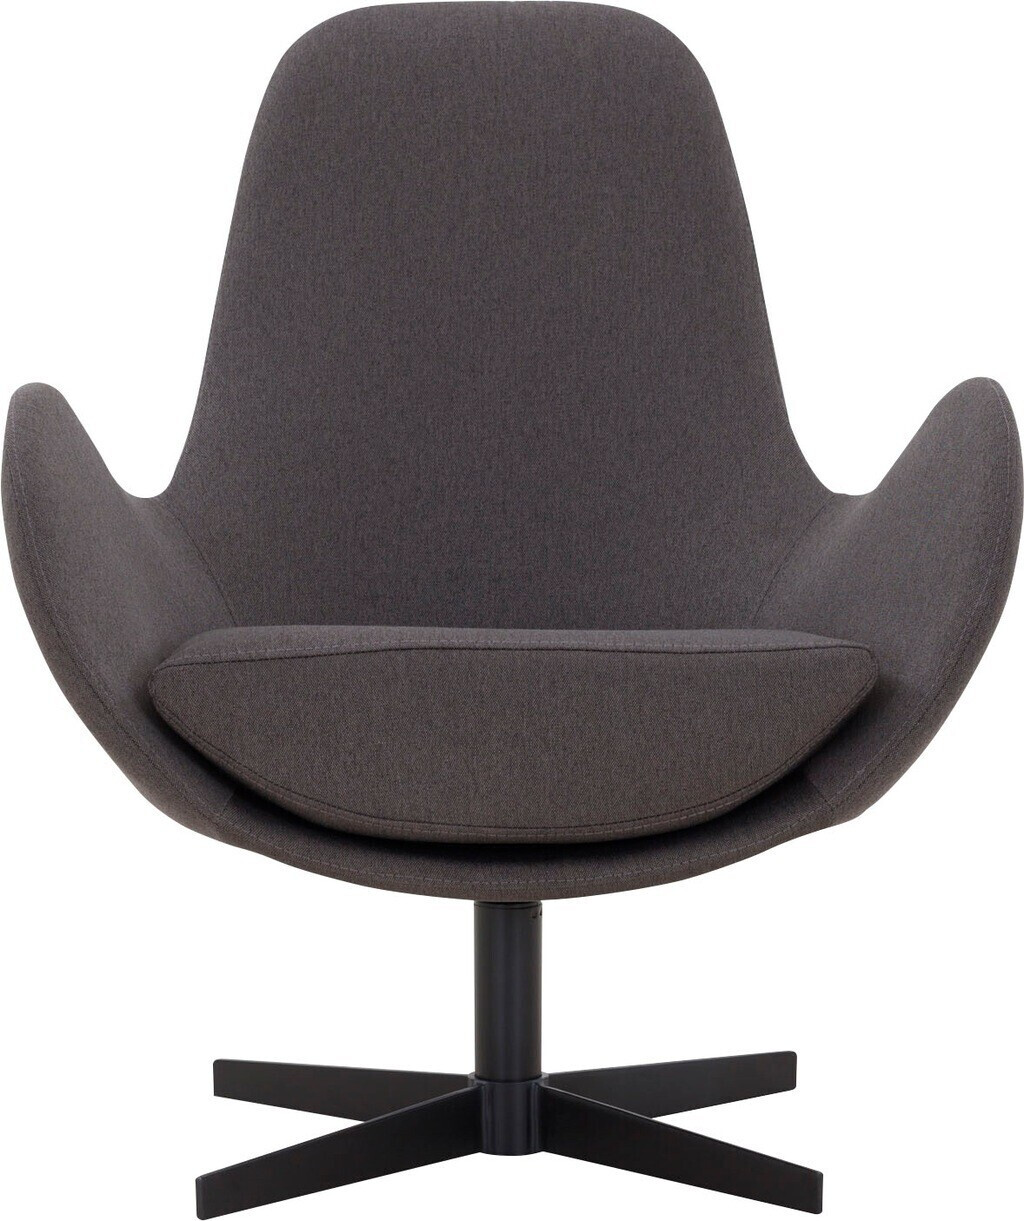 SalesFever Polster-Sessel mit Drehfunktion Textil/Metall 72x69x85cm  dunkelgrau-schwarz (395646) ab 402,94 € | Preisvergleich bei